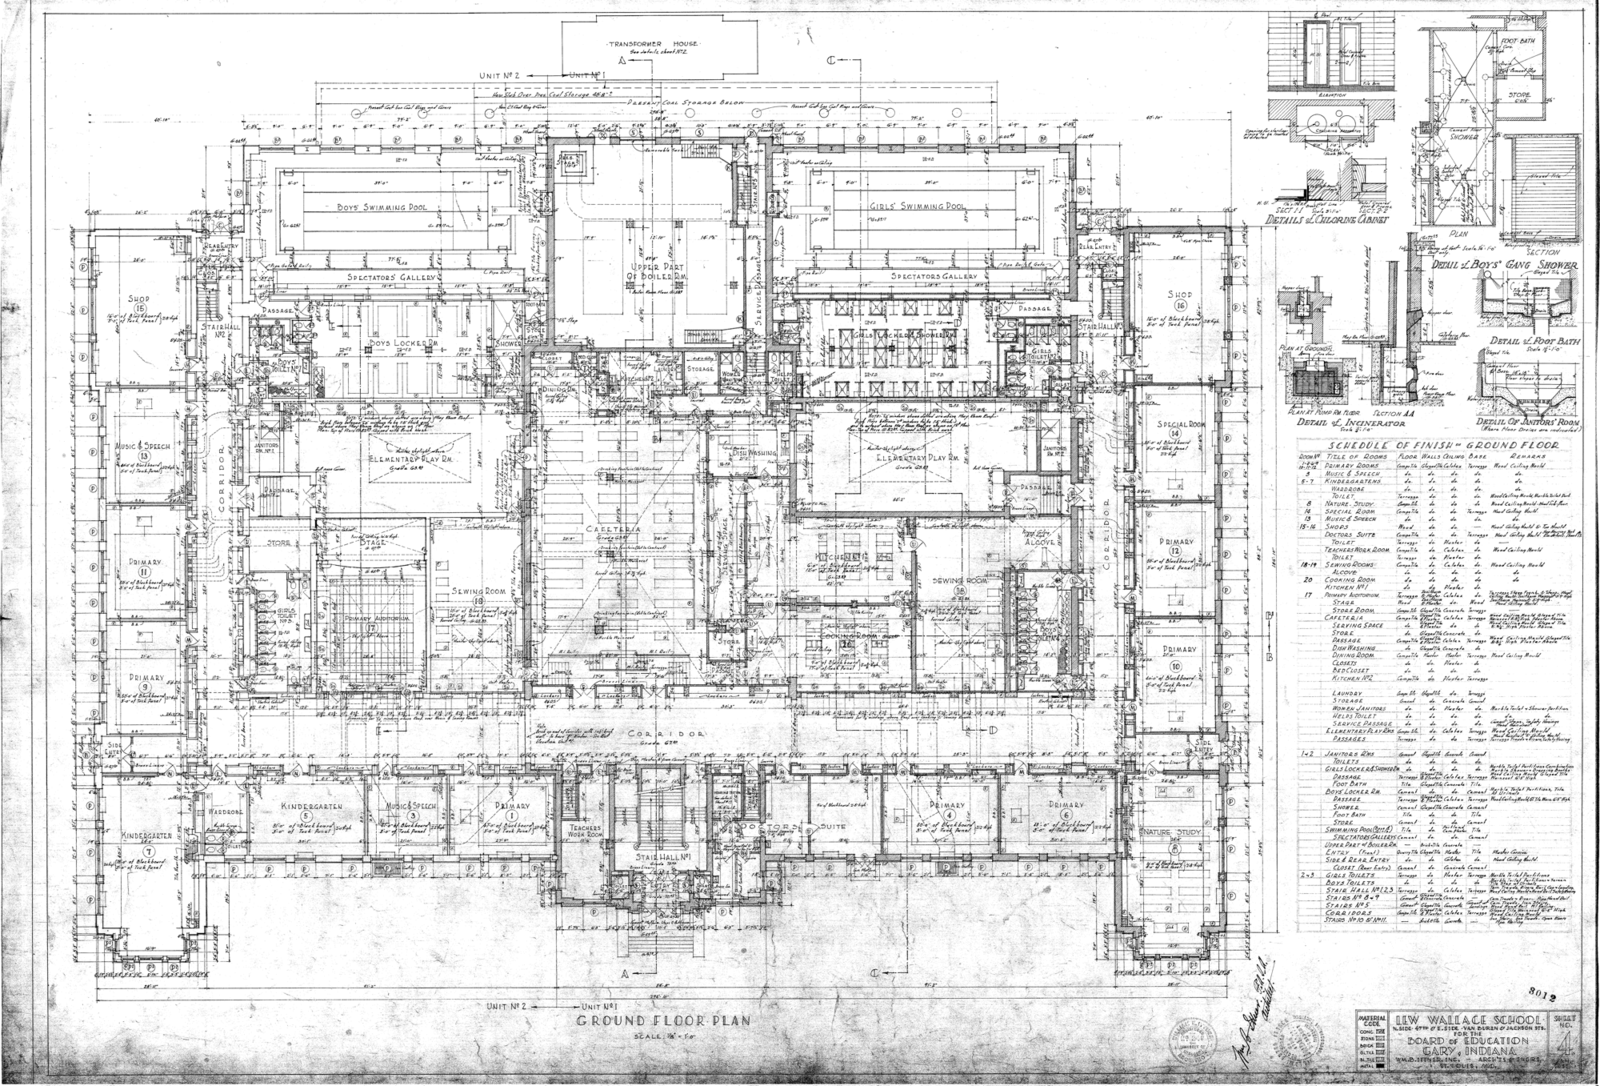 Building plans; blueprints Lew Wallace High School